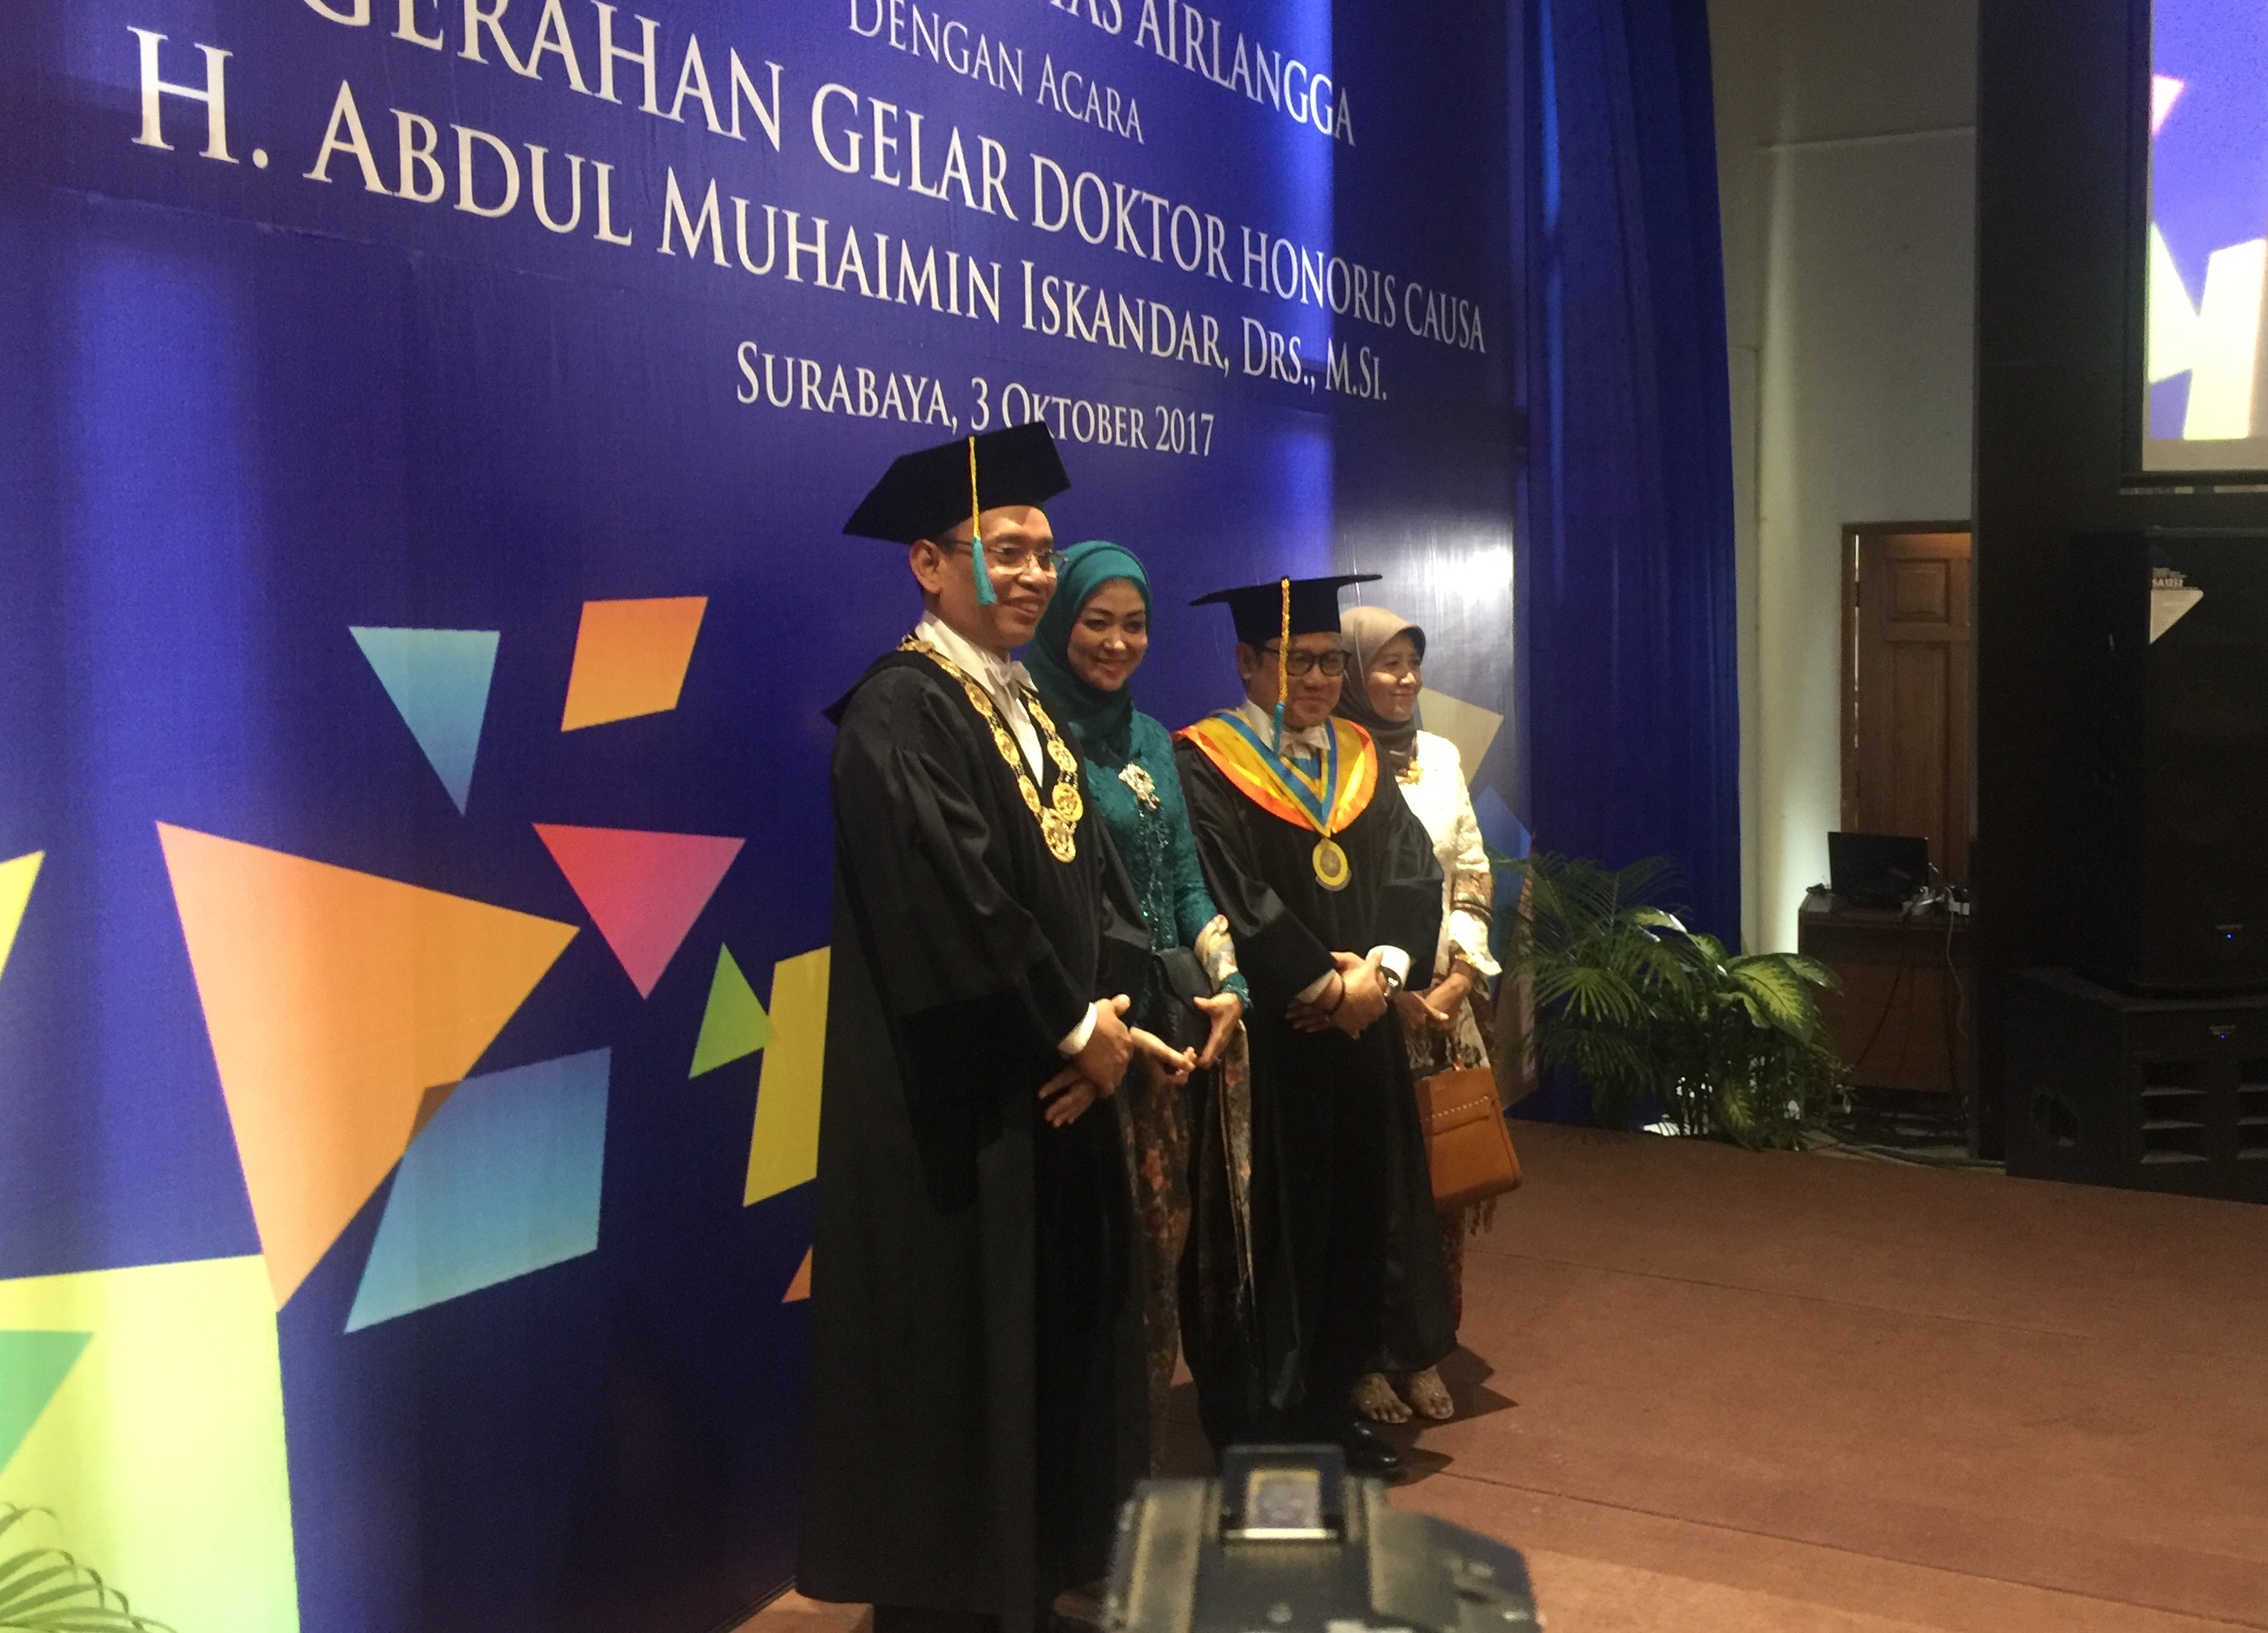 DOKTOR: Muhaimin Iskandar dan istri foro bersama Rektor Unair Prof Dr Mohammad Nasih di Kampus Unair.